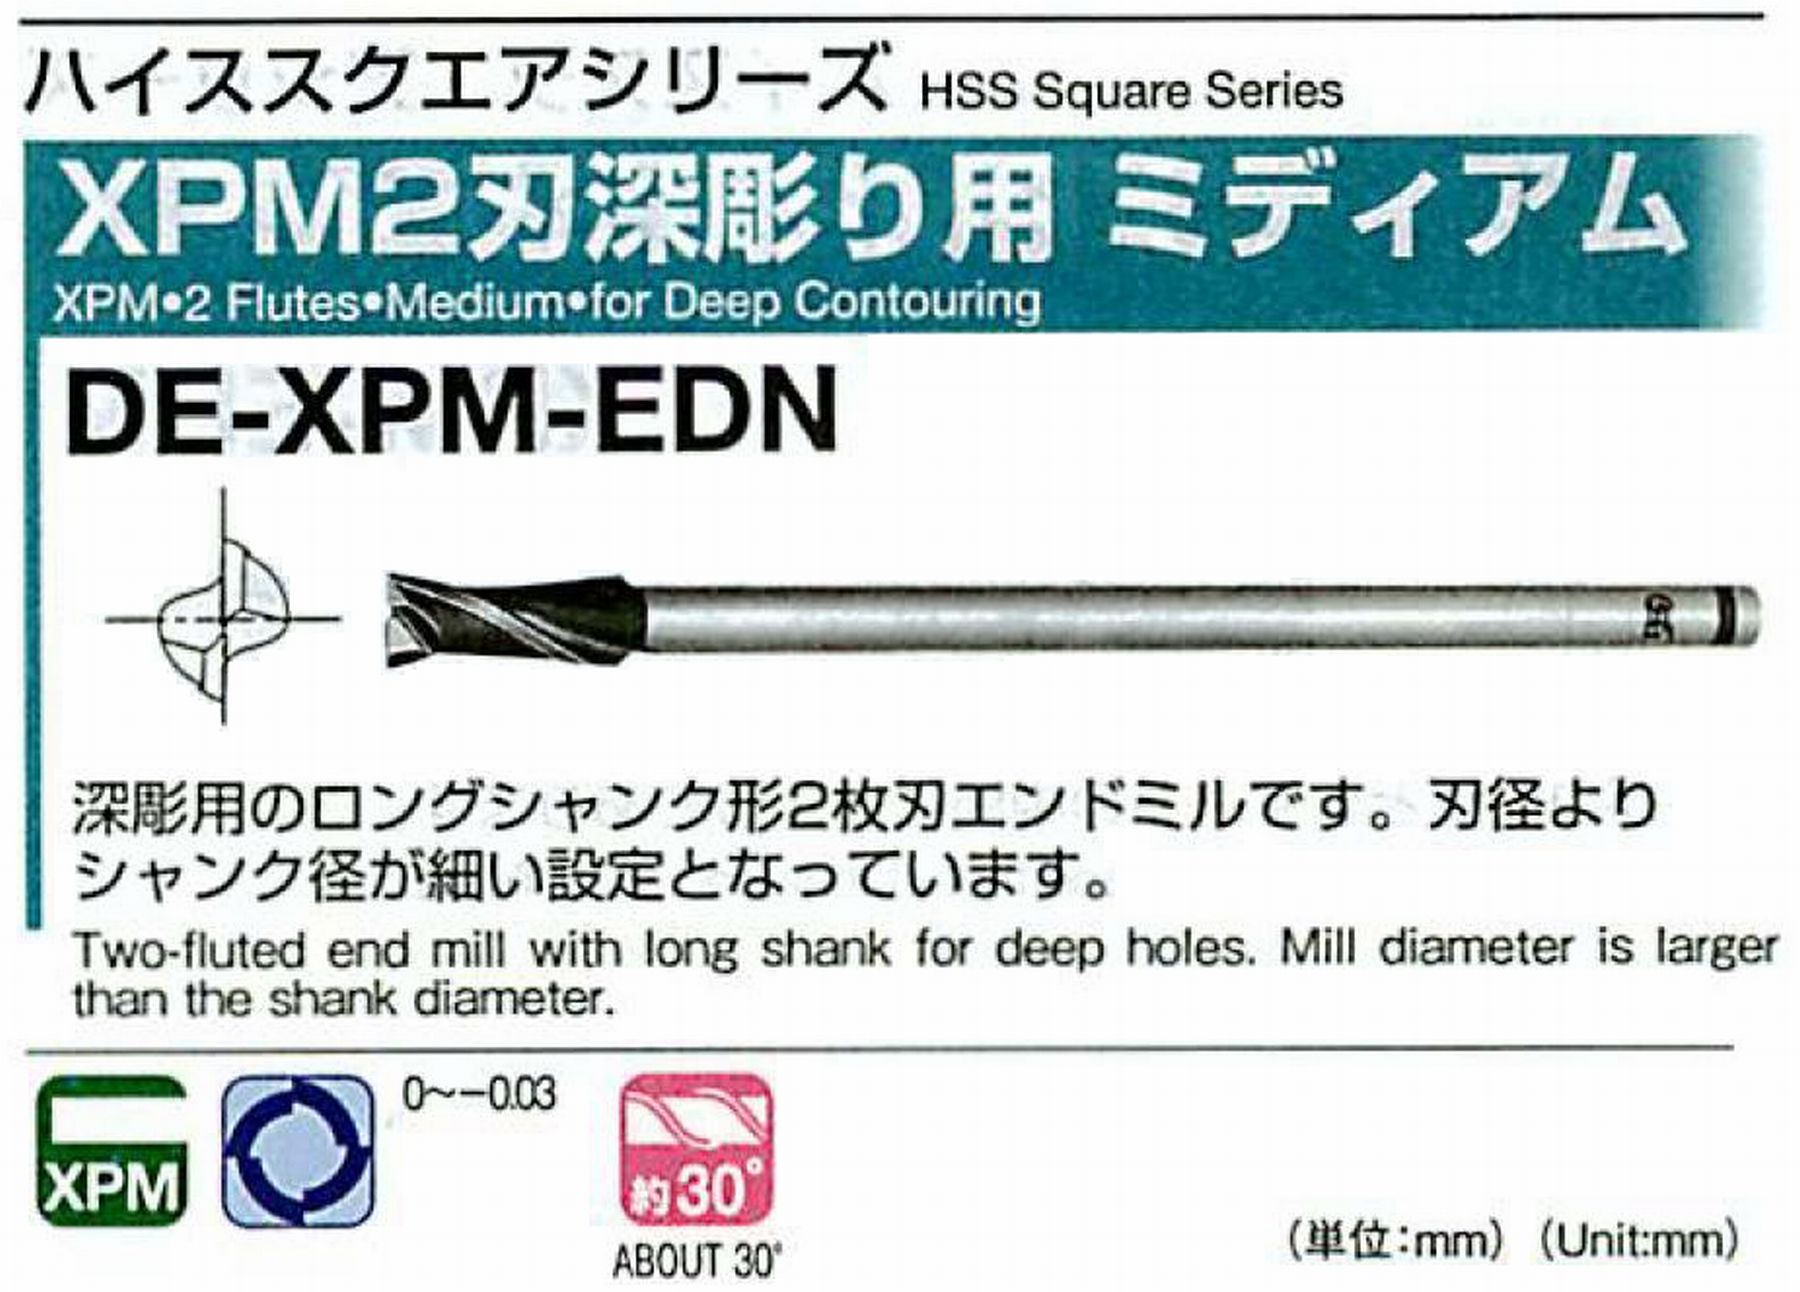 XPM2刃深彫り用 ミディアム DE-XPM-EDN(用途:被削材:炭素鋼、合金鋼、工具鋼、プリハードン鋼、焼き入れ鋼、ステンレス鋼、鋳鉄、銅